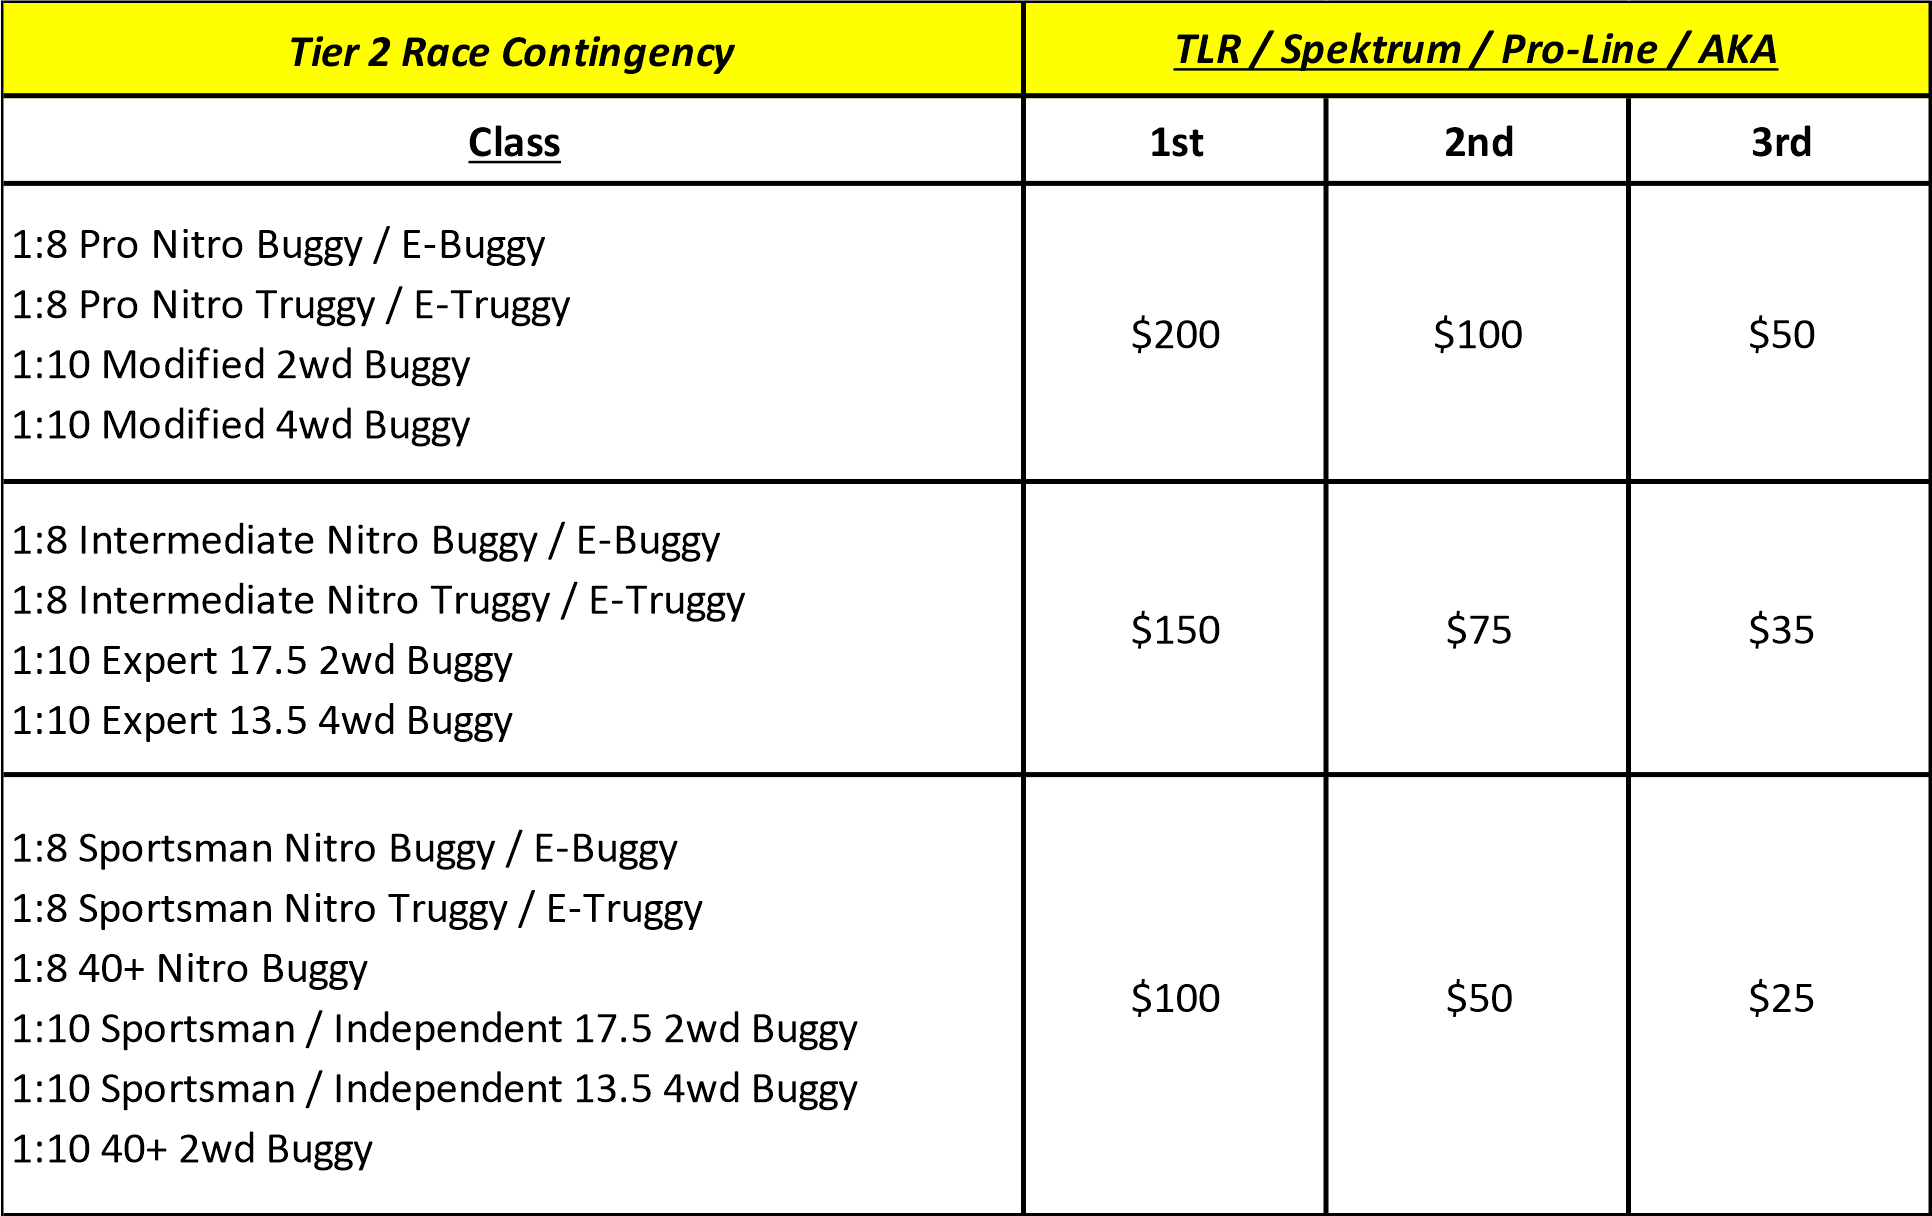 Tier 2 Race Contingency